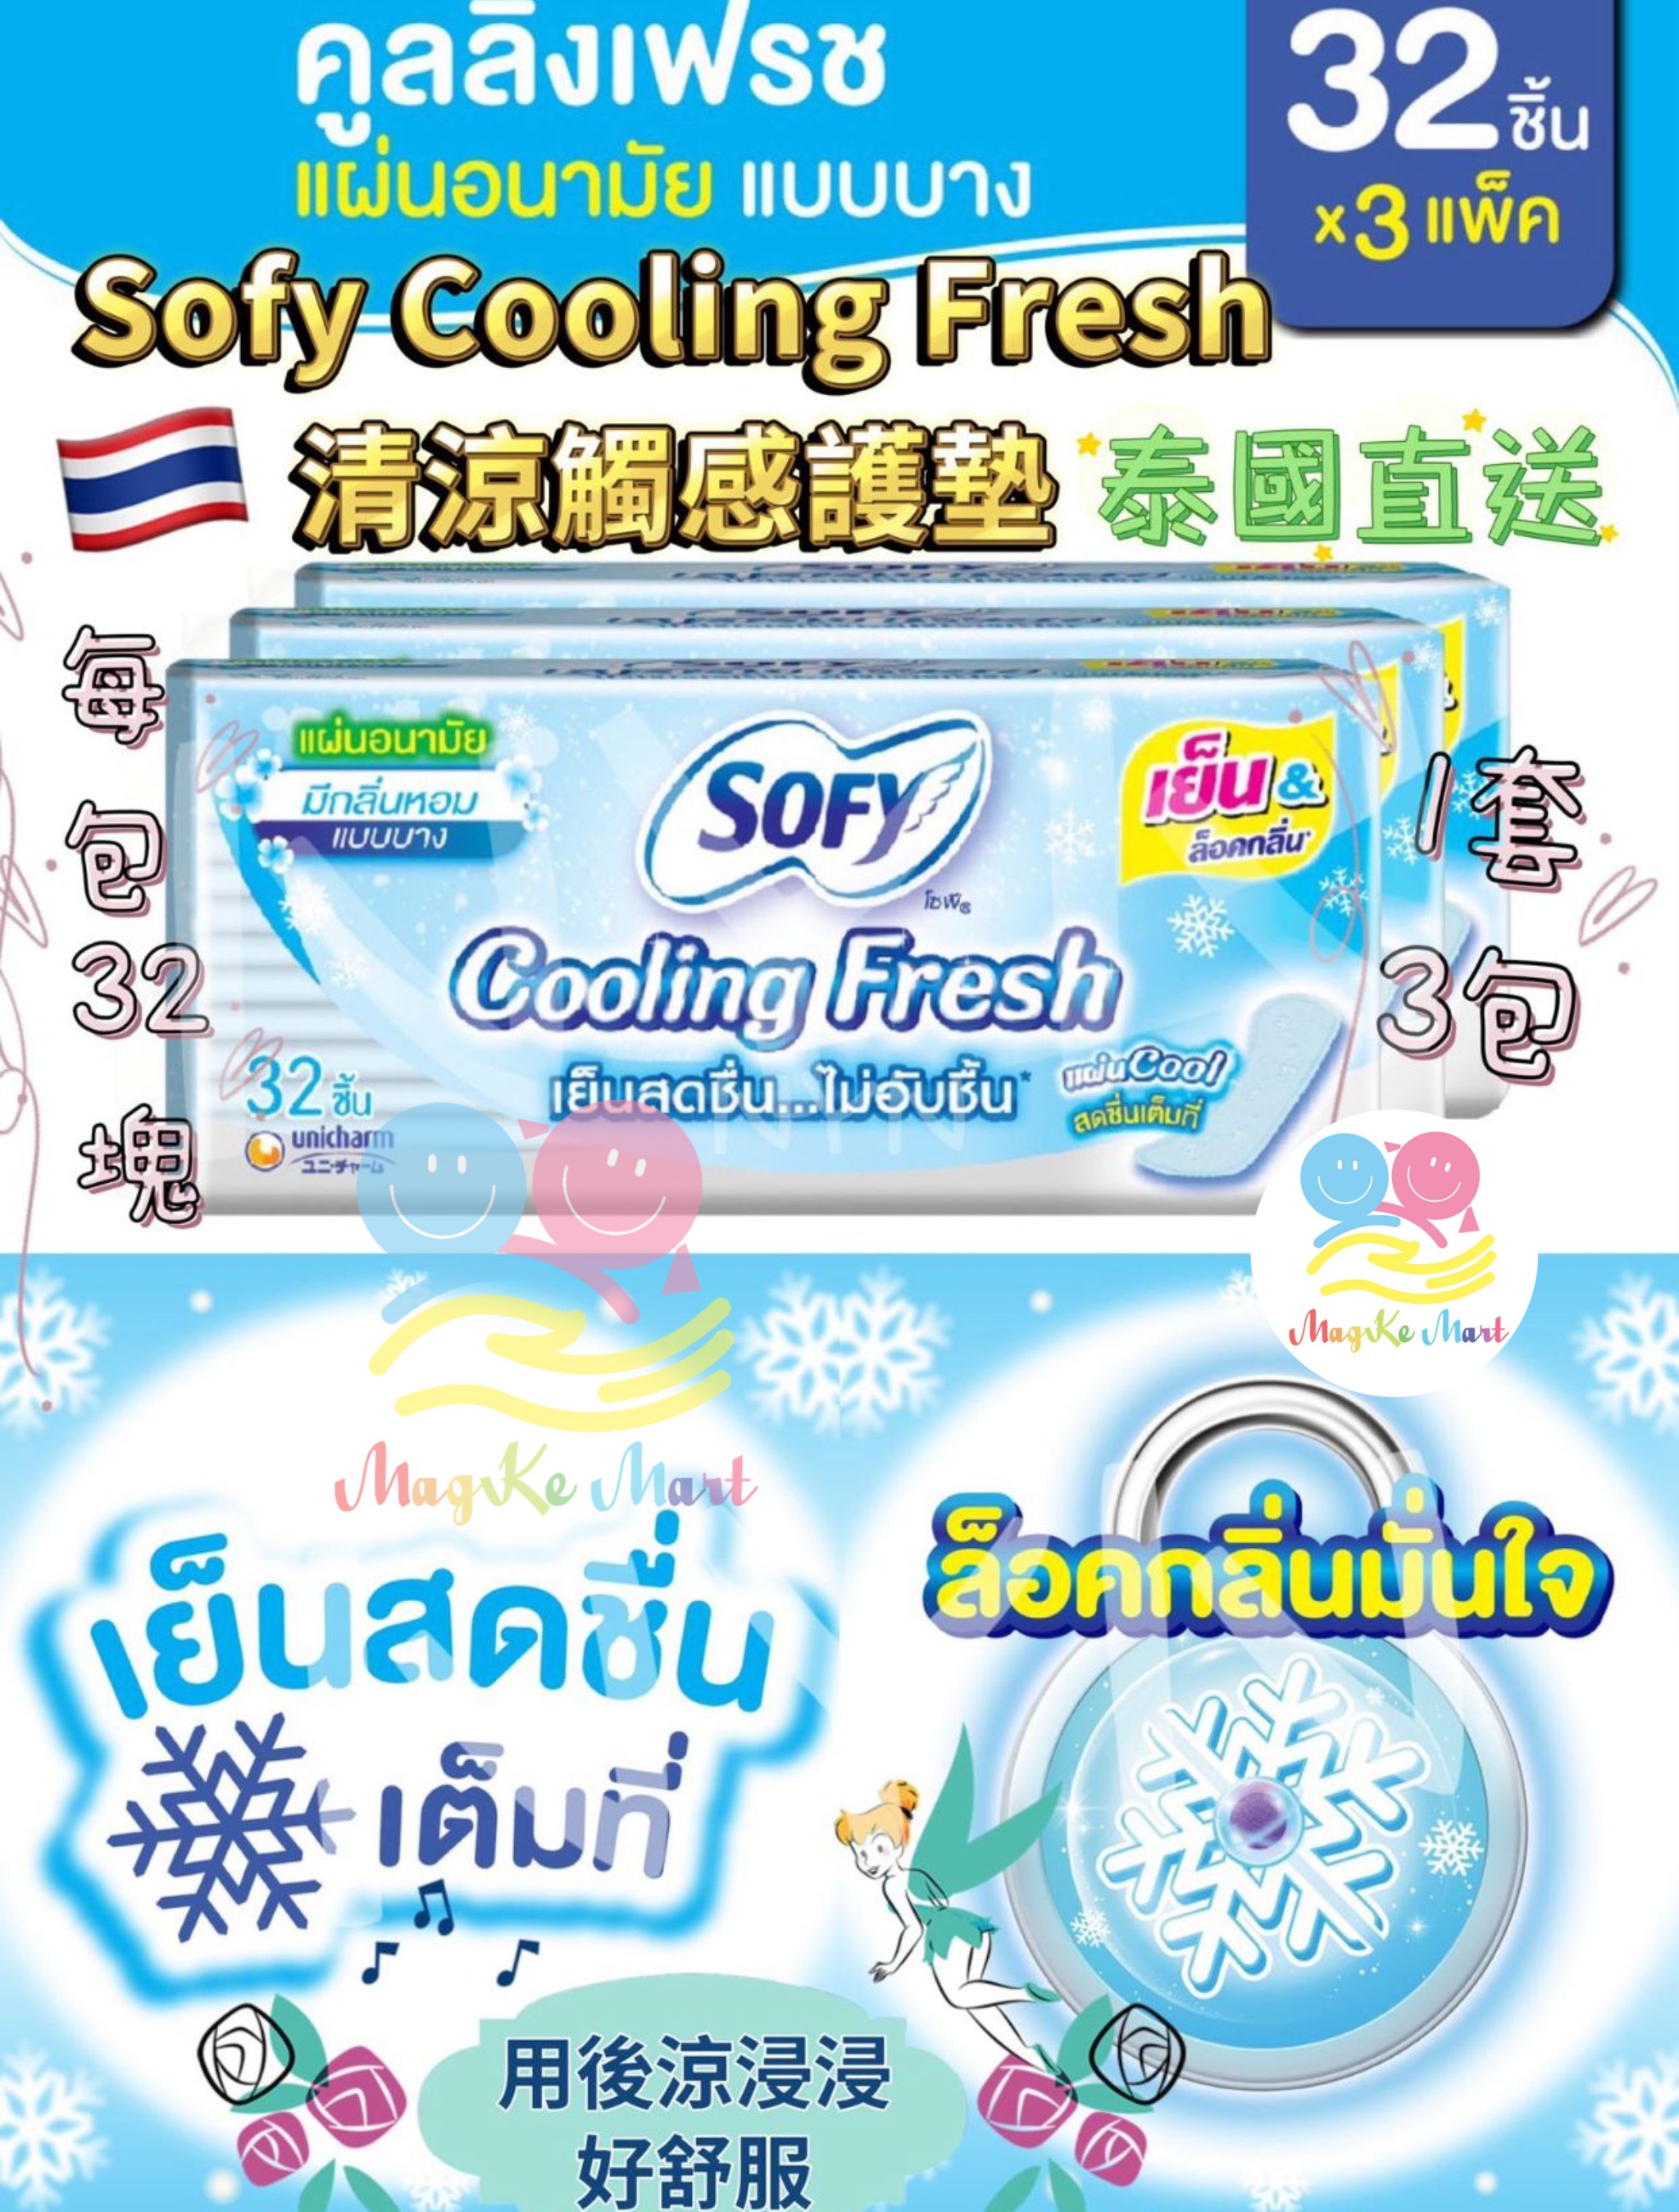 泰國 Sofy Cooling Fesh 清涼觸感護墊(1套3包)